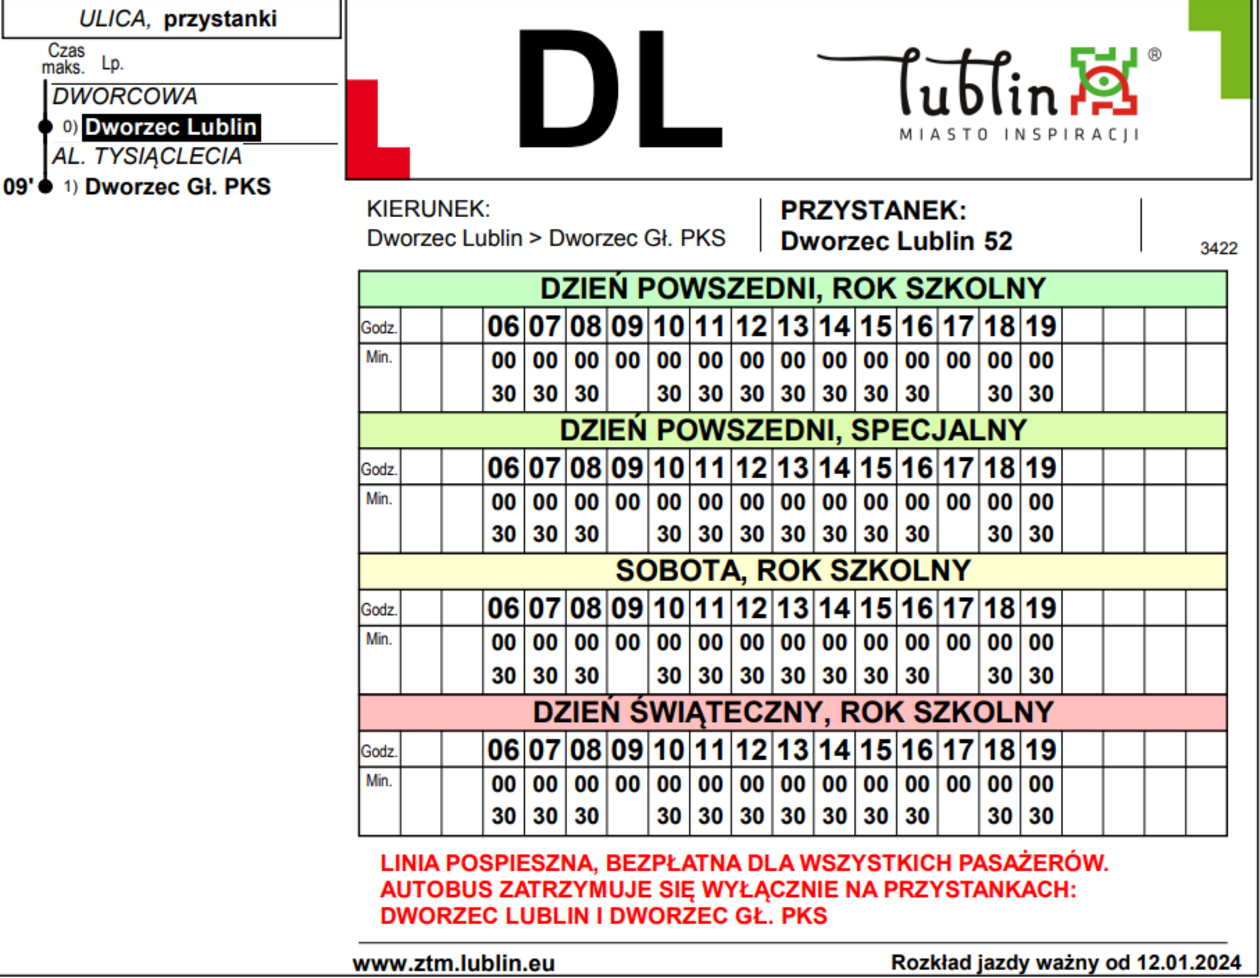  Rozkłady bezpłatnej linii autobusowej D1  - Autor: ZTM Lublin